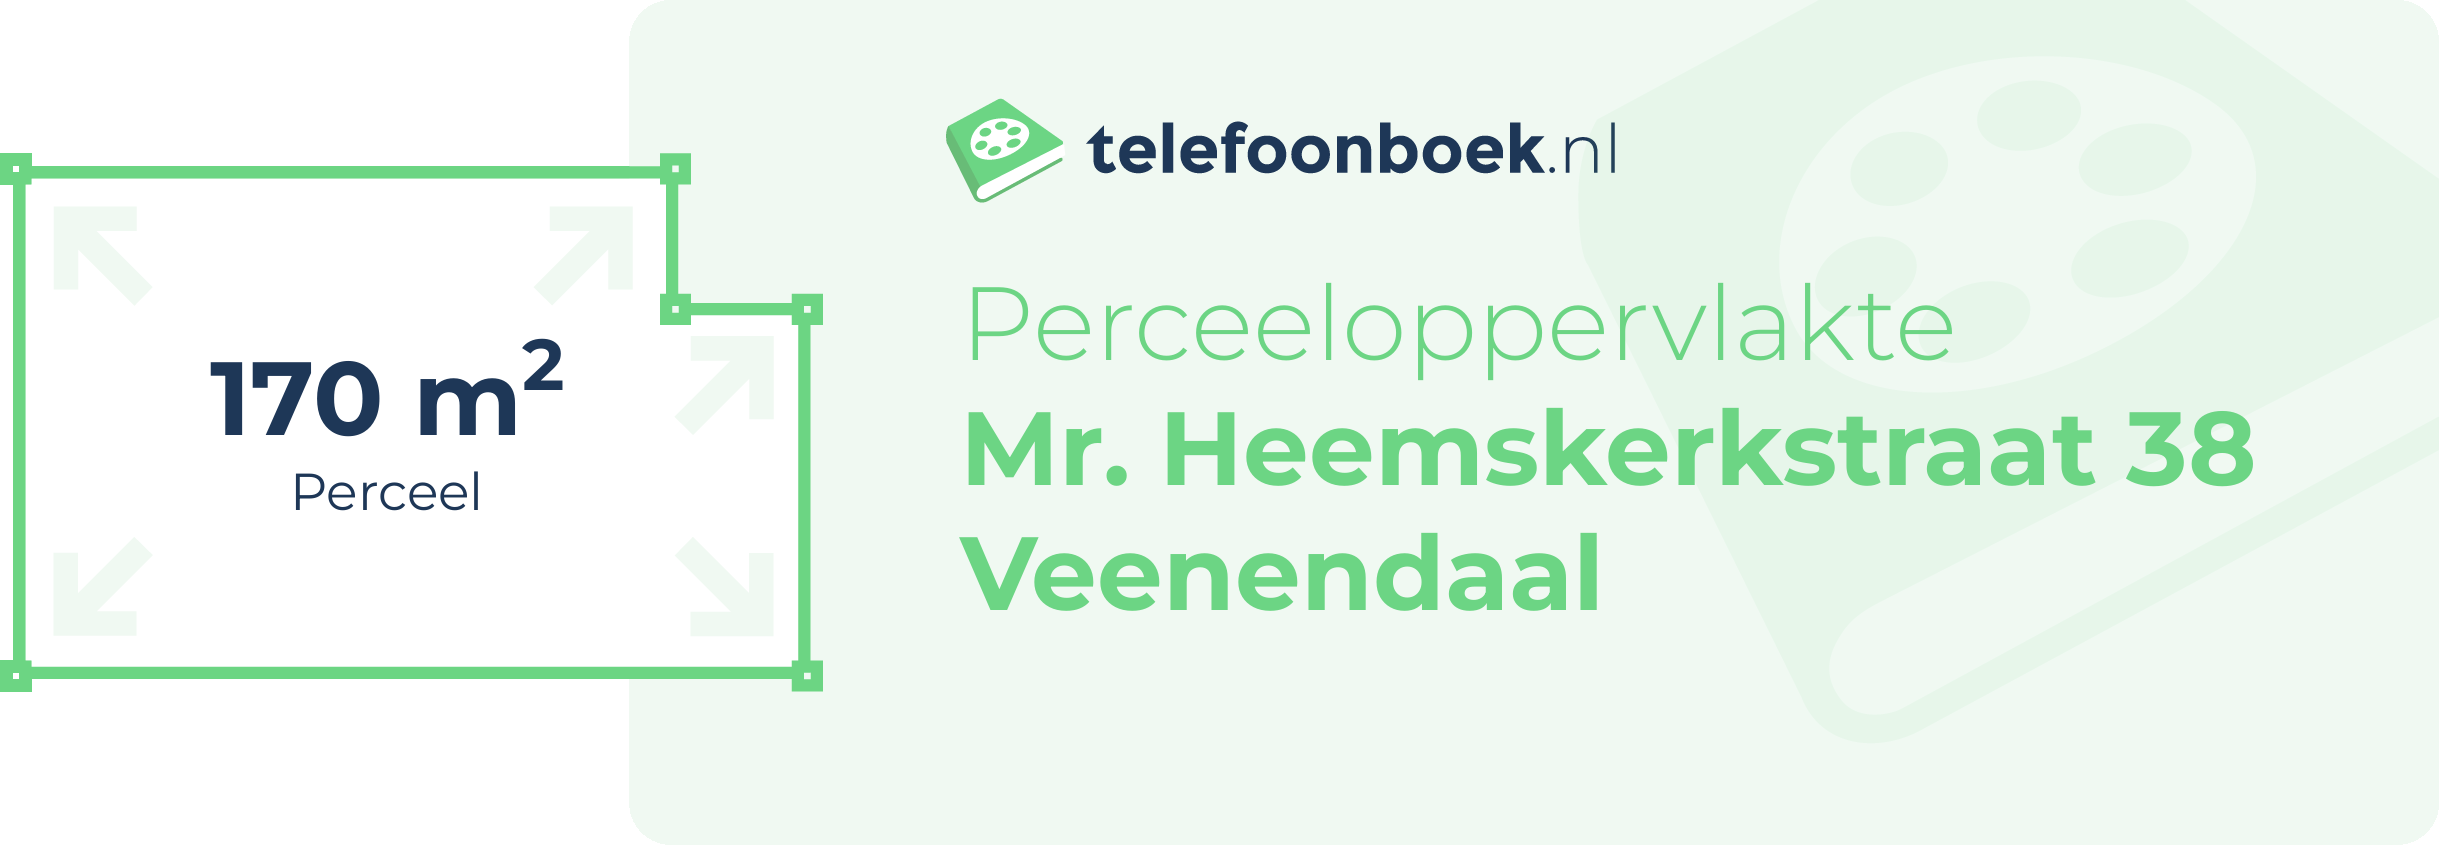 Perceeloppervlakte Mr. Heemskerkstraat 38 Veenendaal